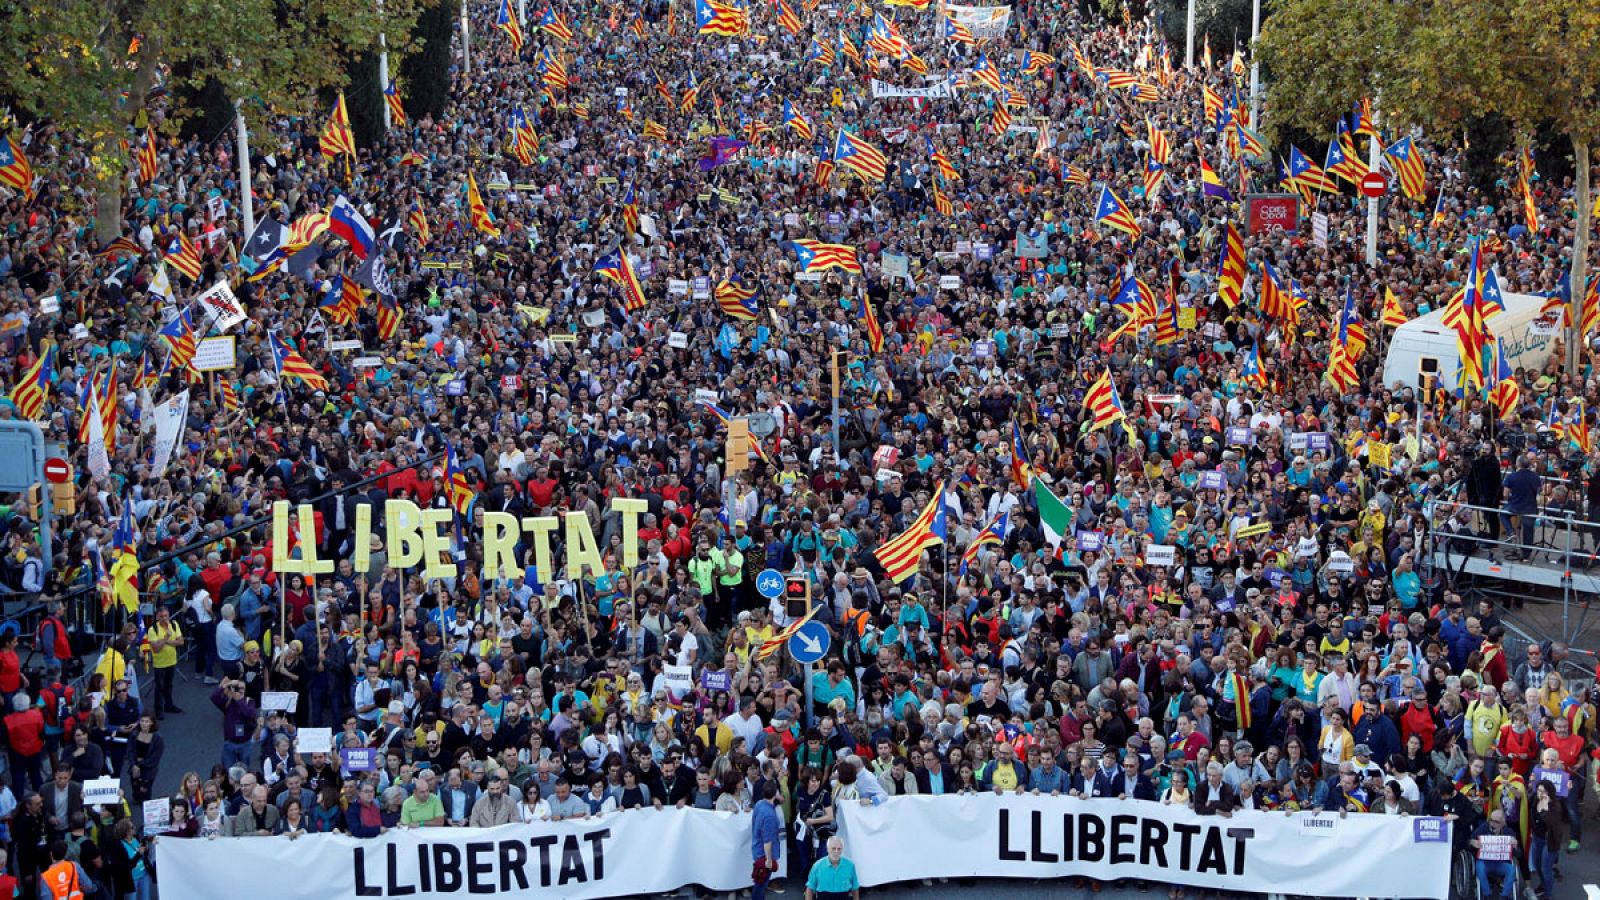 Sentencia procés: 350.000 personas se manifiestan en Barcelona contra la sentencia del 'procés'